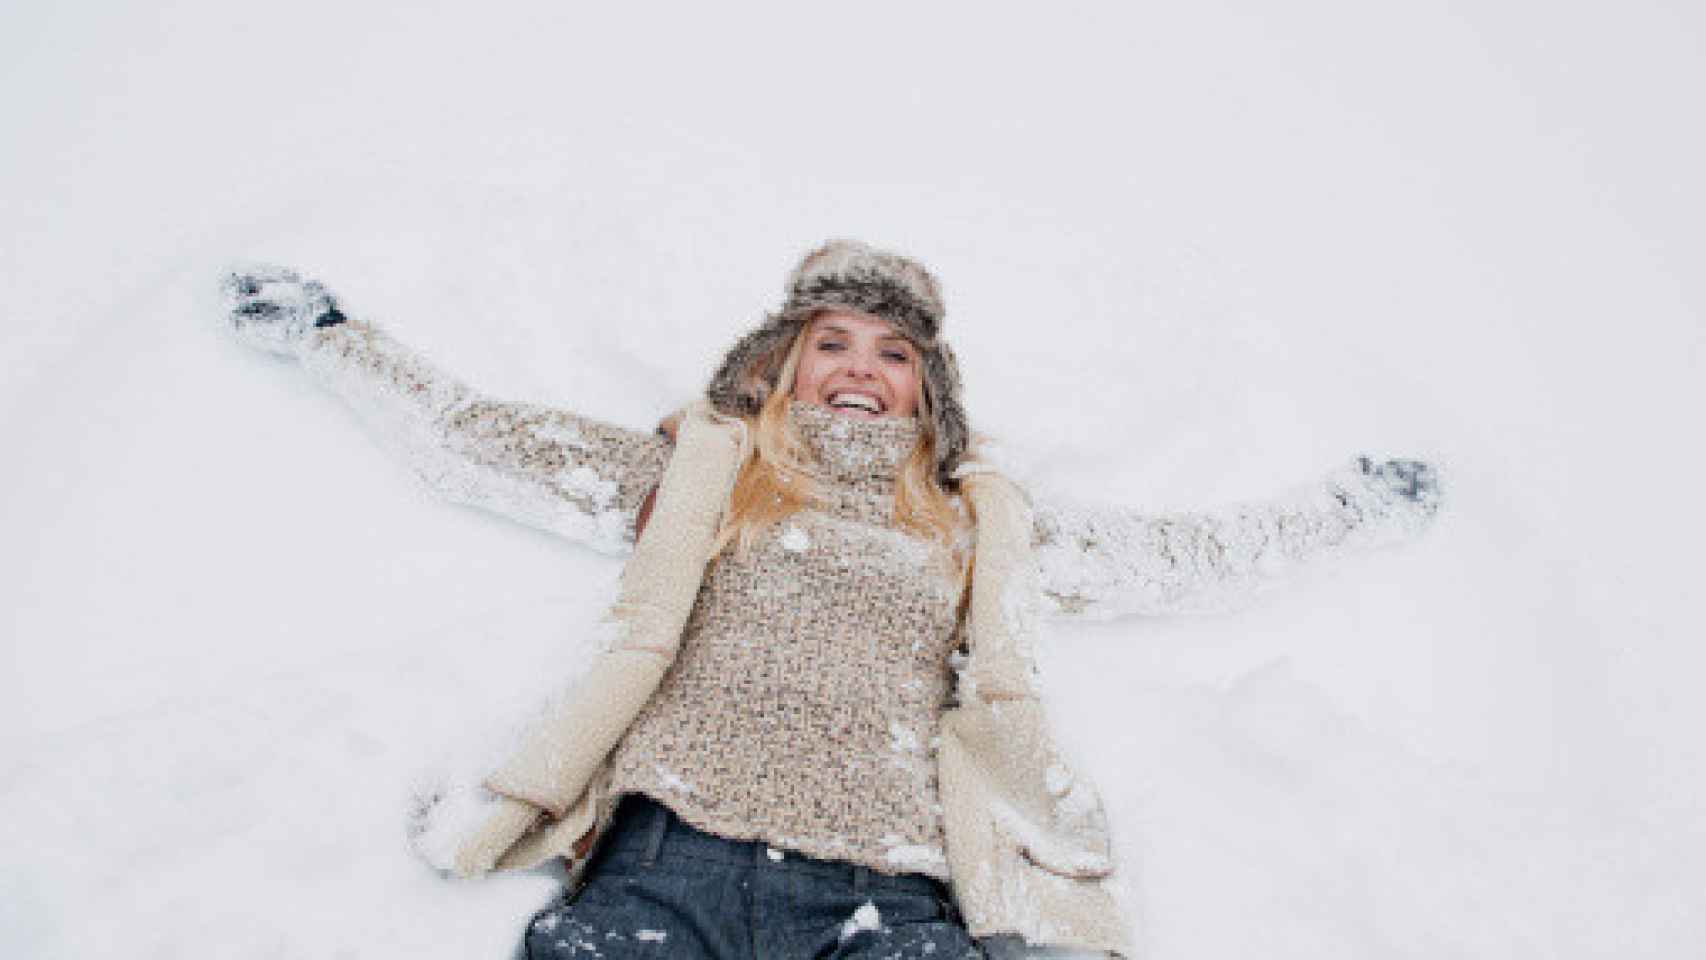 Una mujer disfrutando de la nieve.